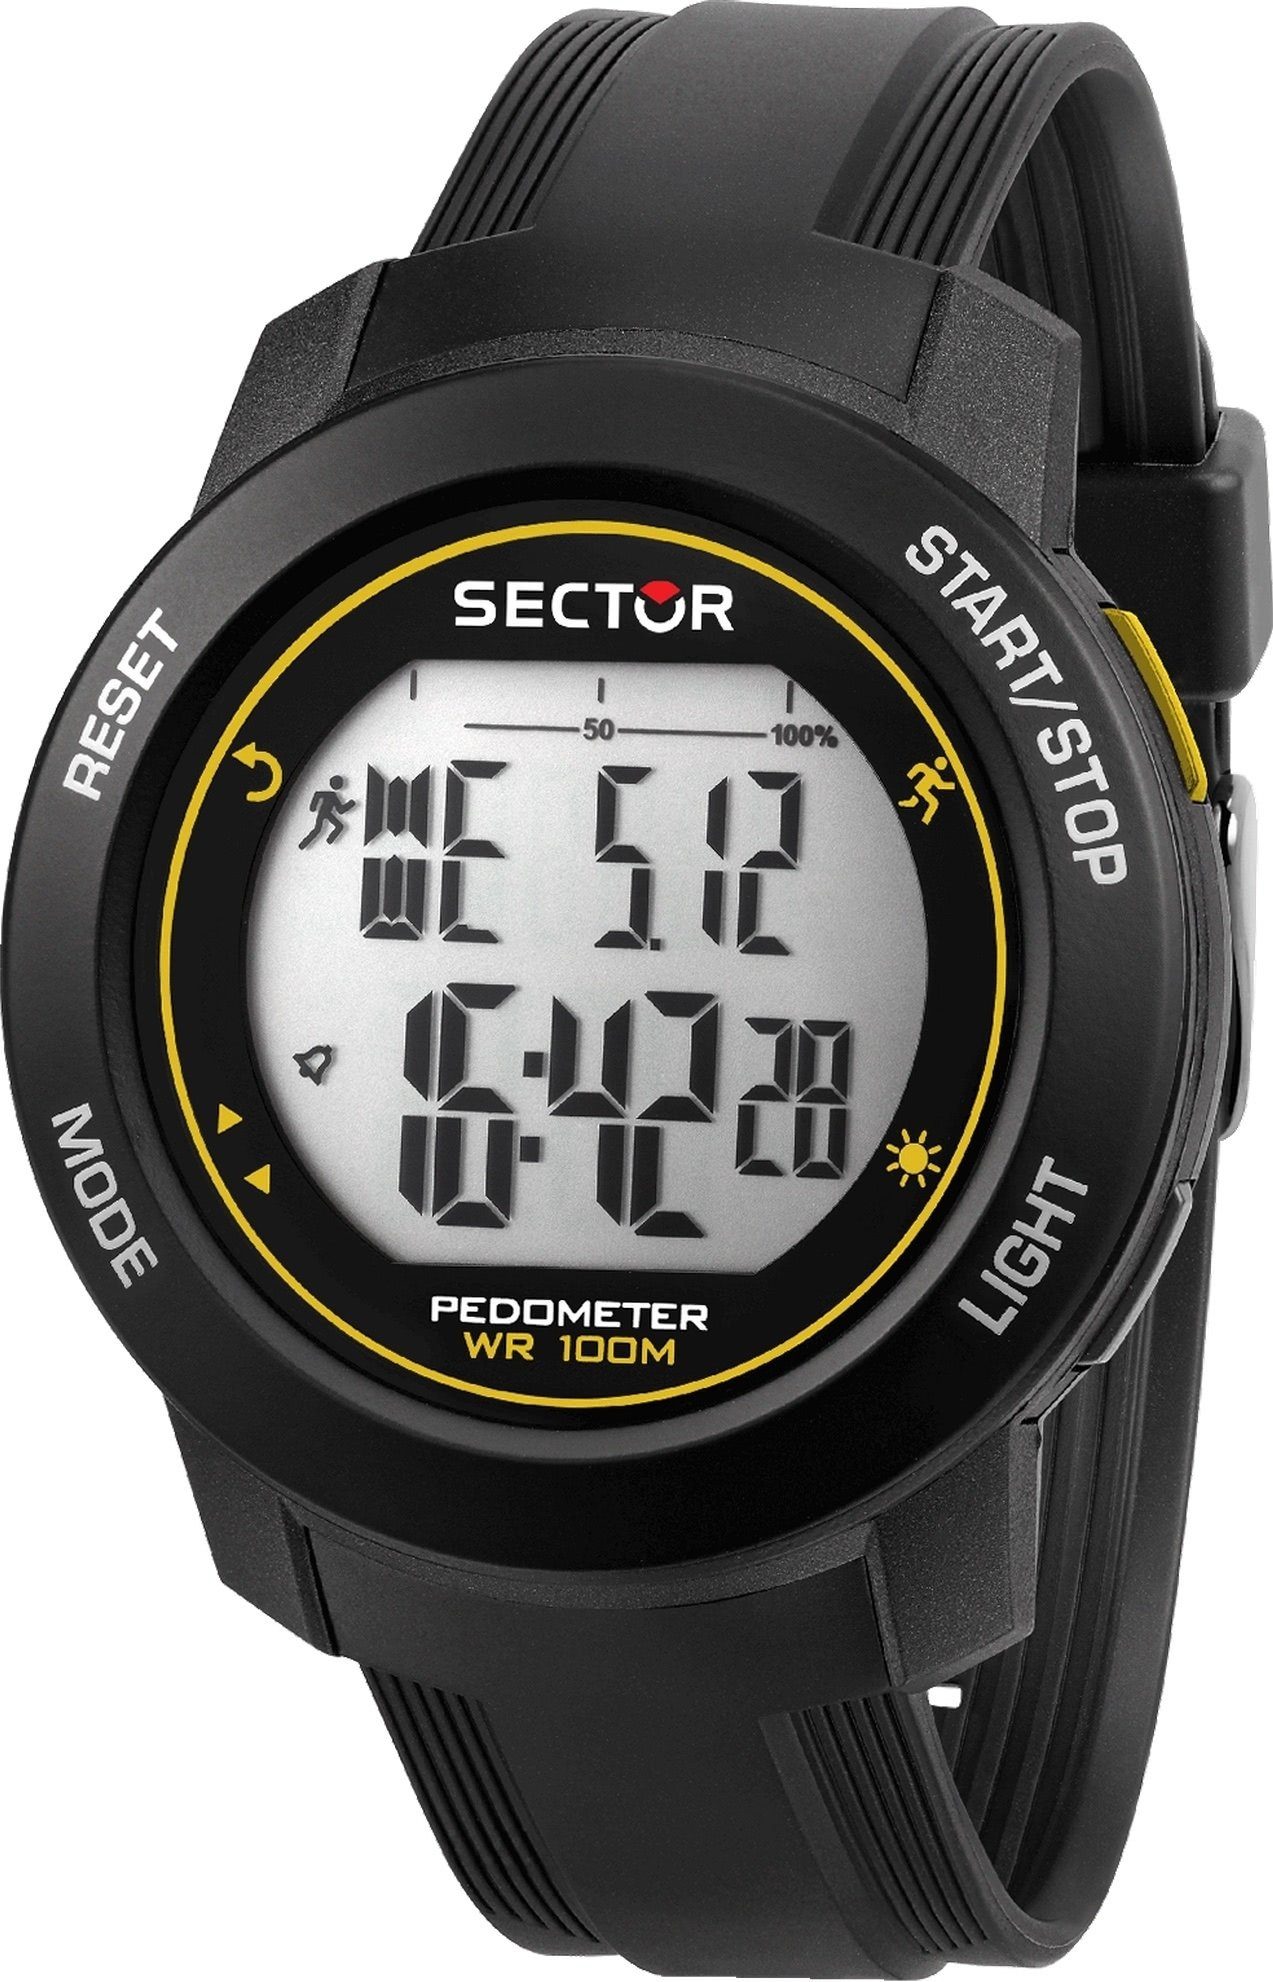 Sector Digitaluhr Sector Herren groß PURarmband Armbanduhr eckig, Digital, Herren Armbanduhr schwarz 43,5x36,5mm), (ca